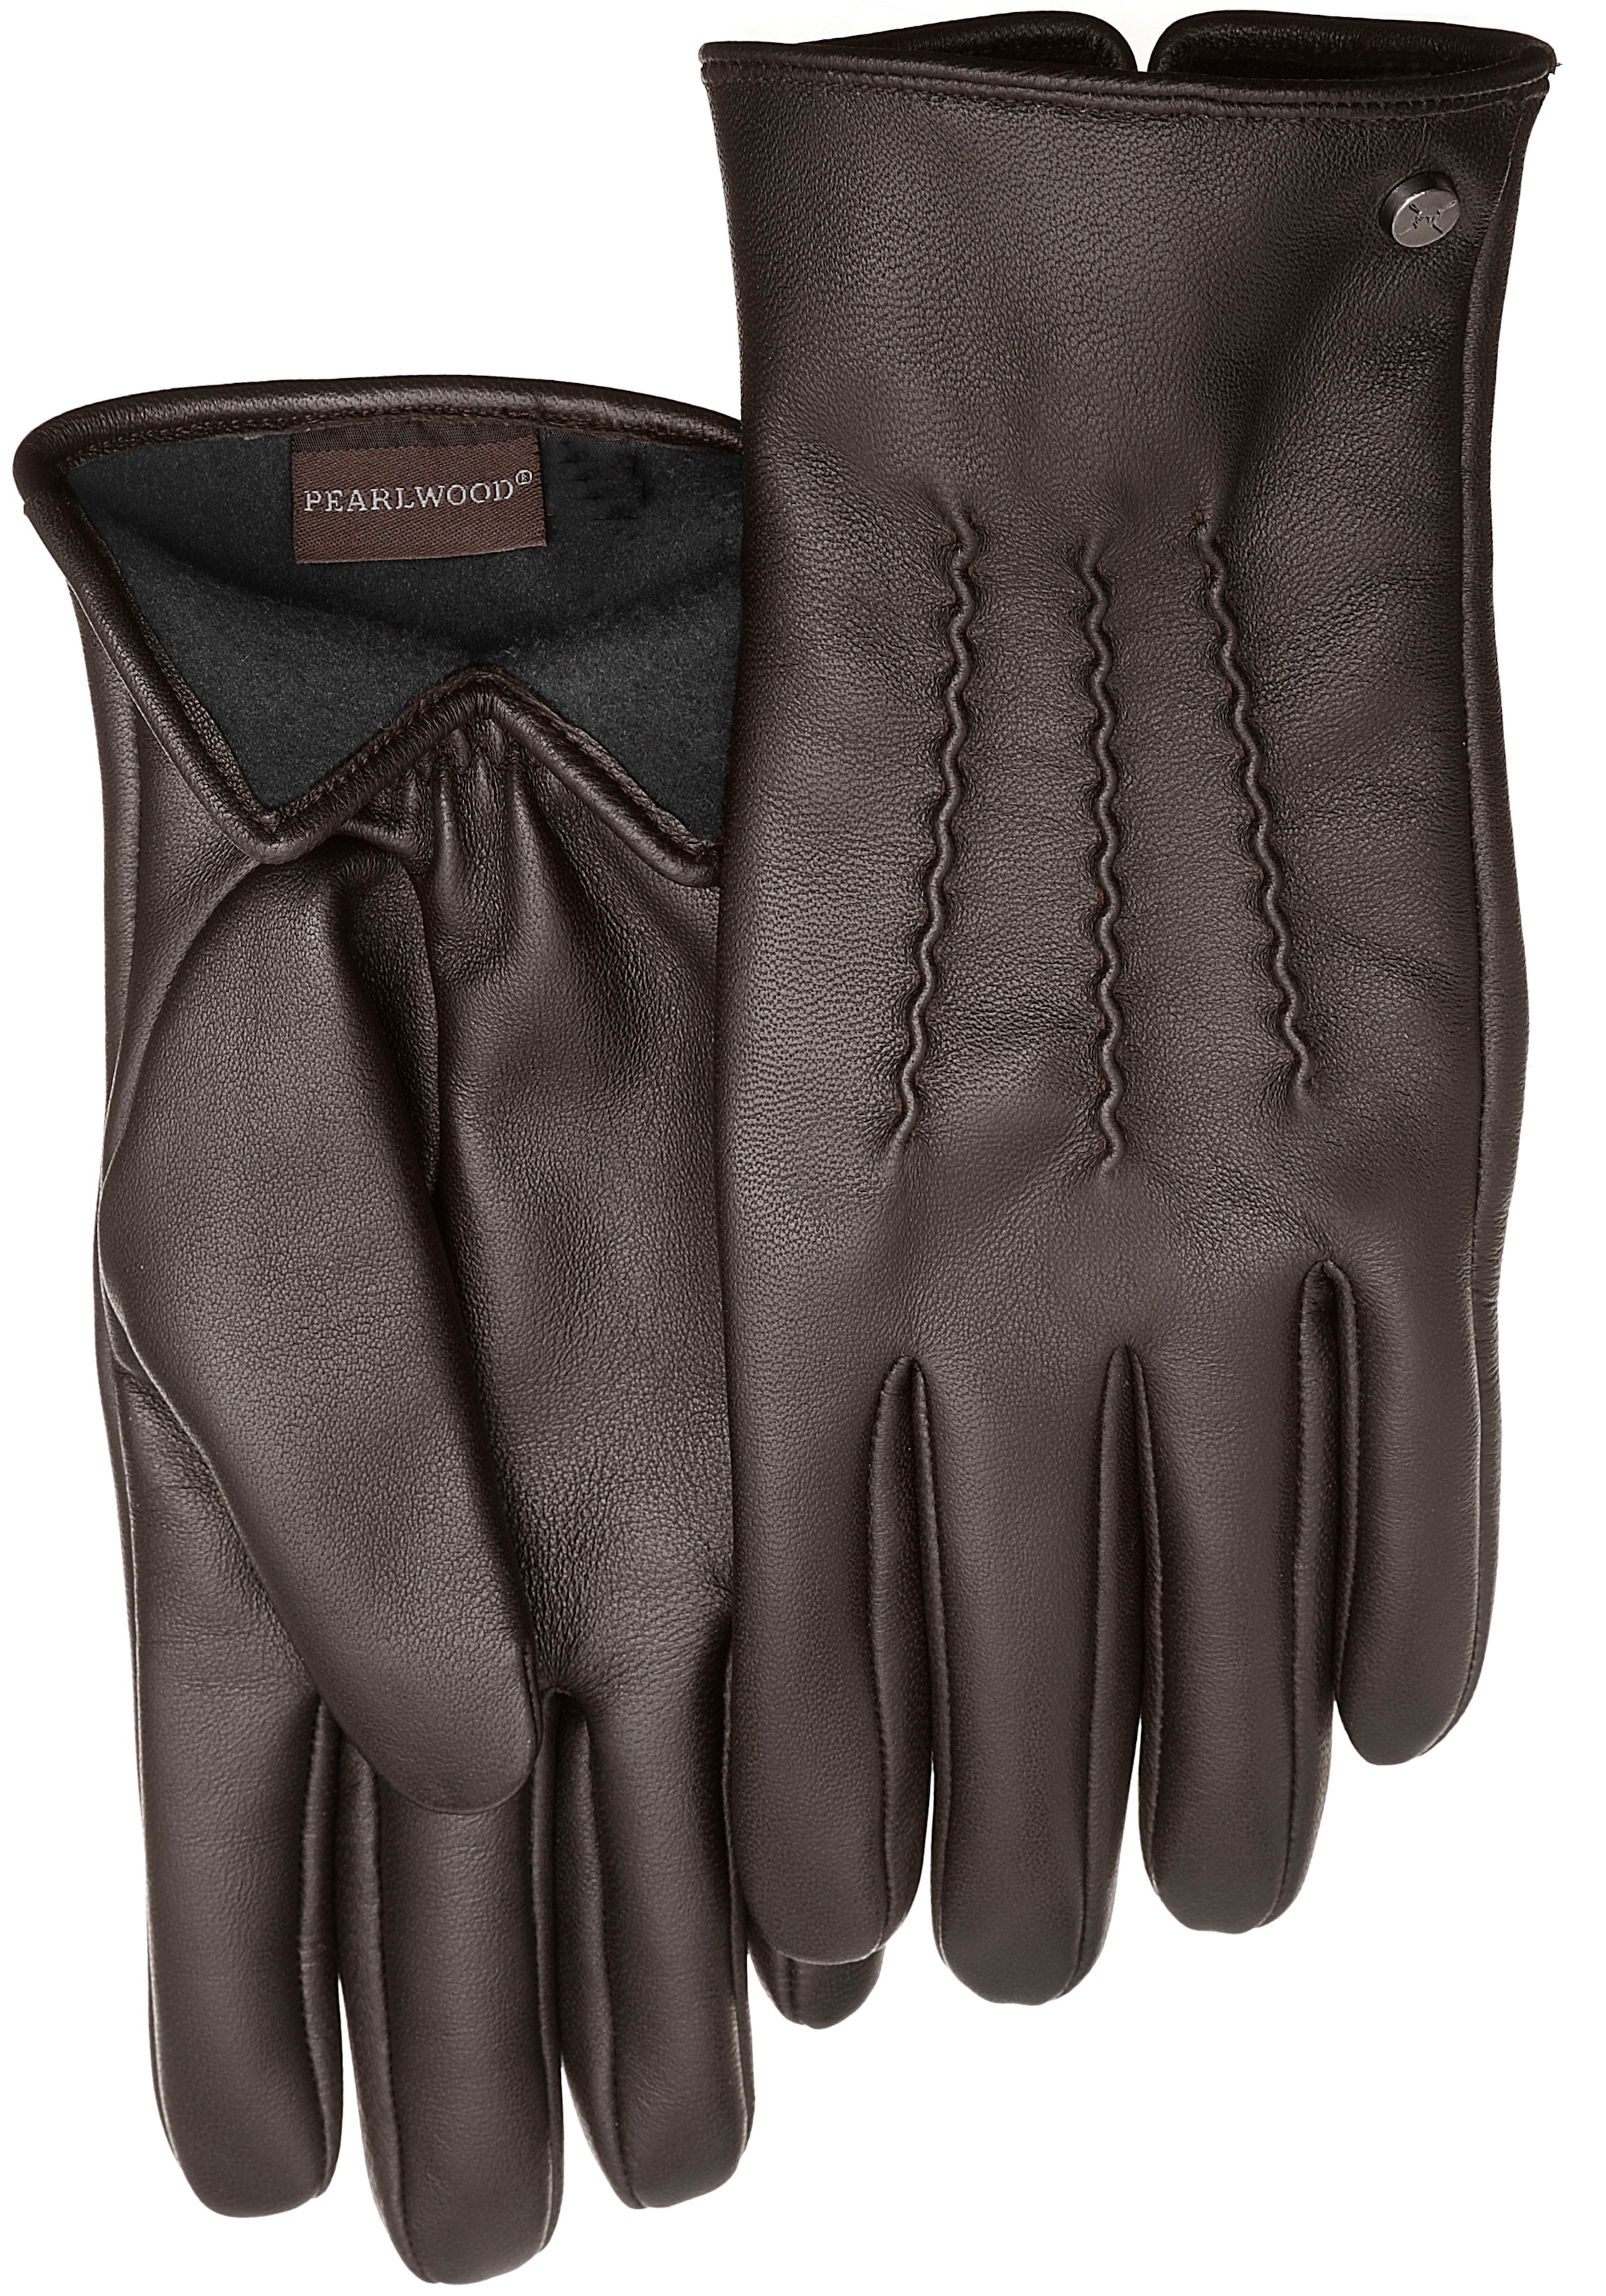 günstige Herren Handschuhe zu Schnäppchen Preisen online kaufen | OTTO